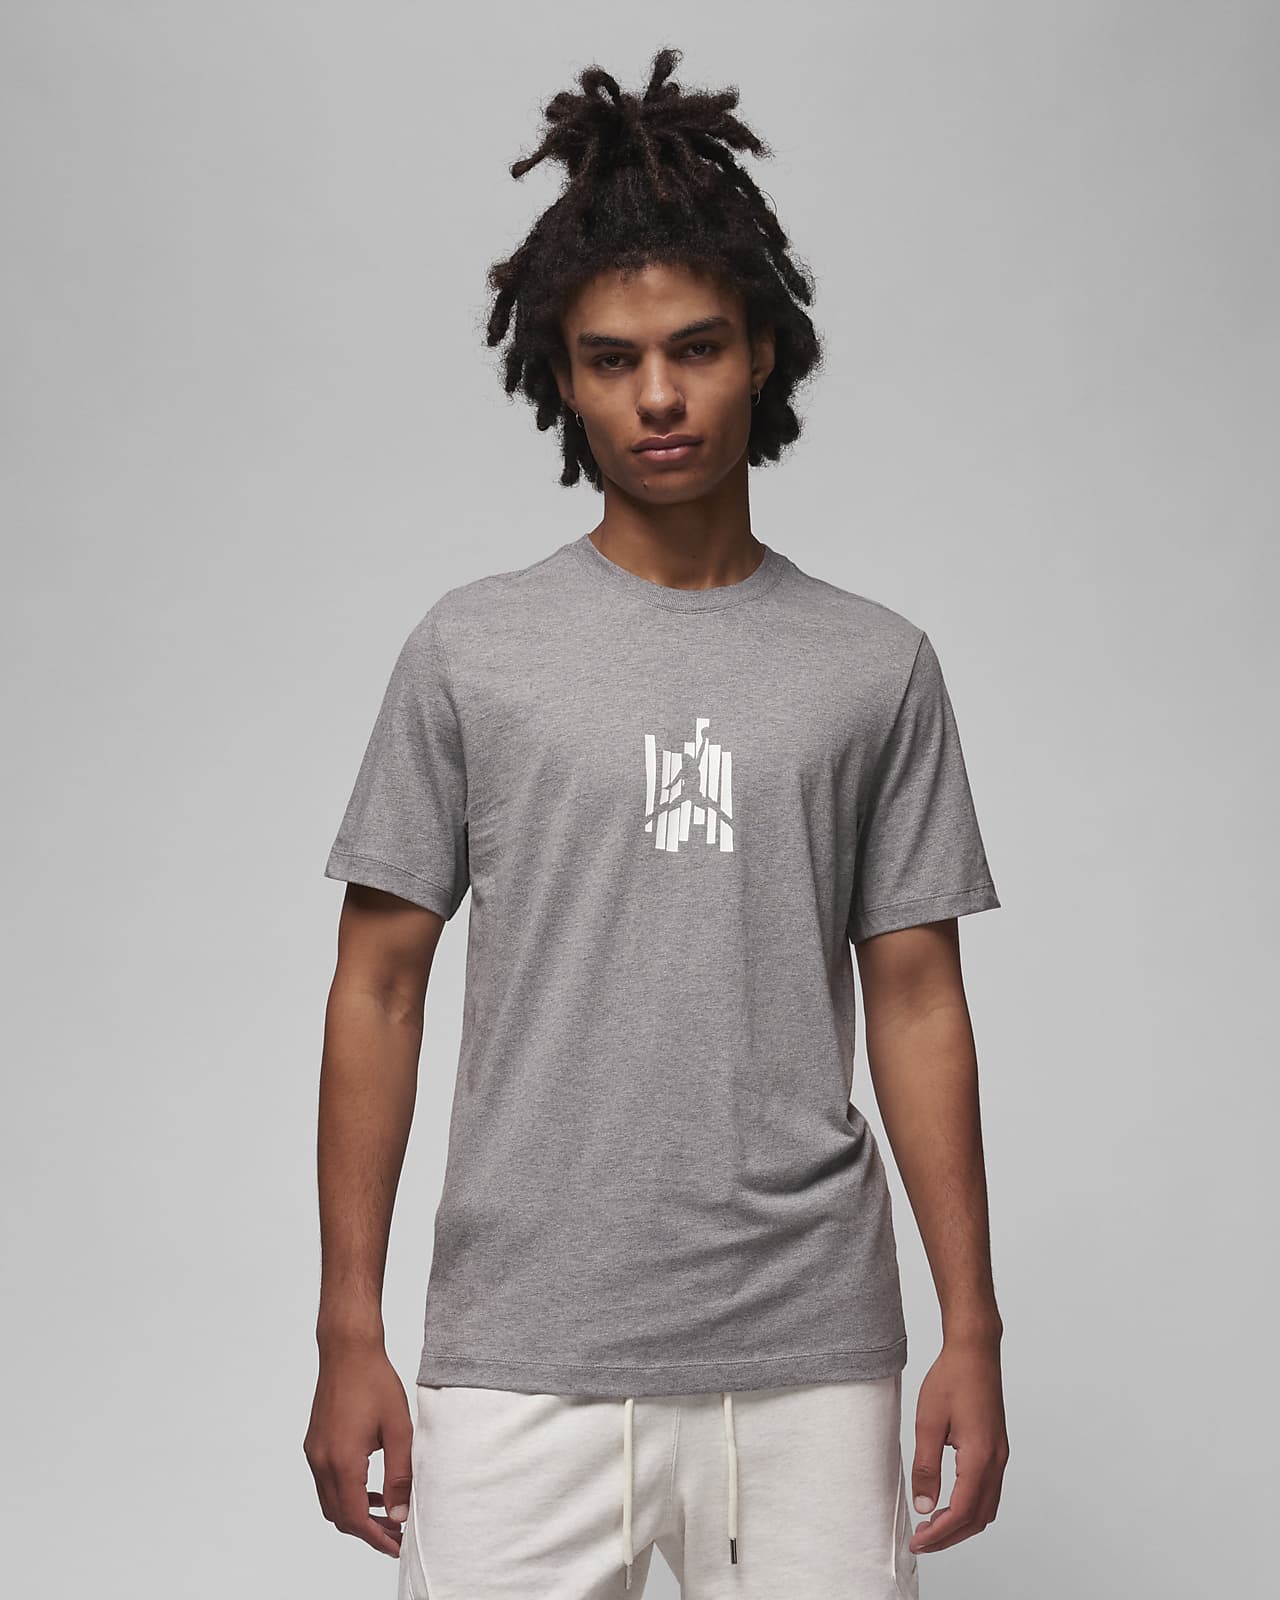 Jordan Brand Camiseta con estampado - Hombre